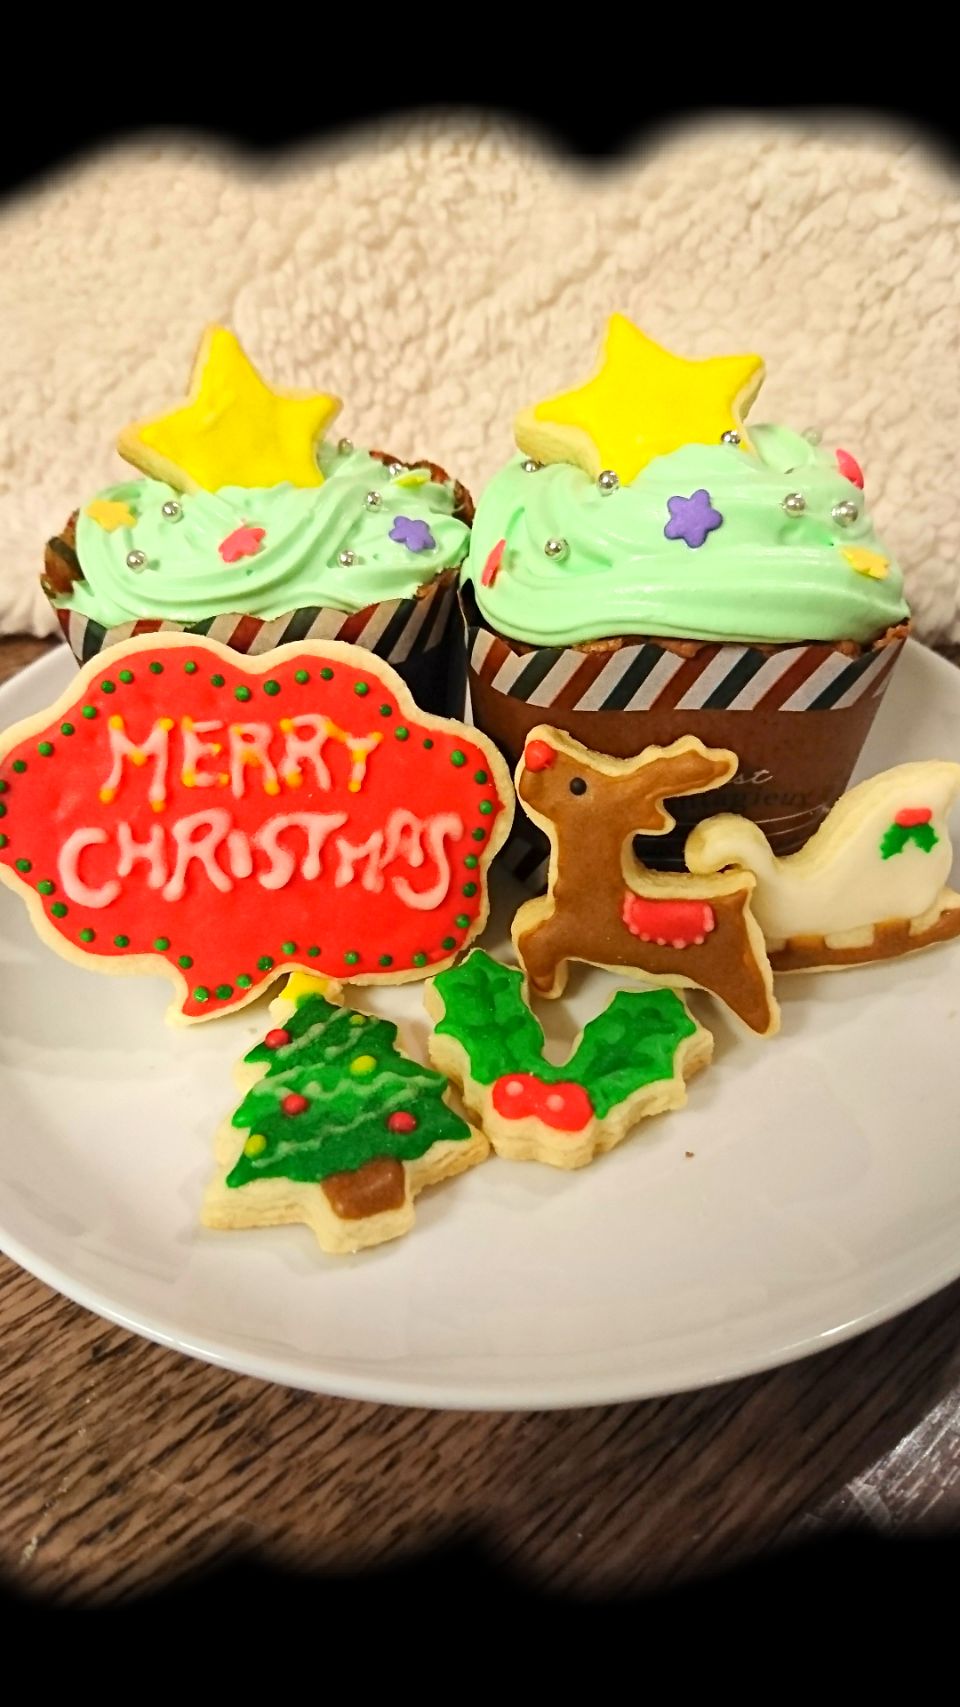 #ツリーケーキ #クリスマスアイシングクッキー#クリスマスケーキ#クリスマス#クリスマスパーティーグランプリ #アイシングクッキー